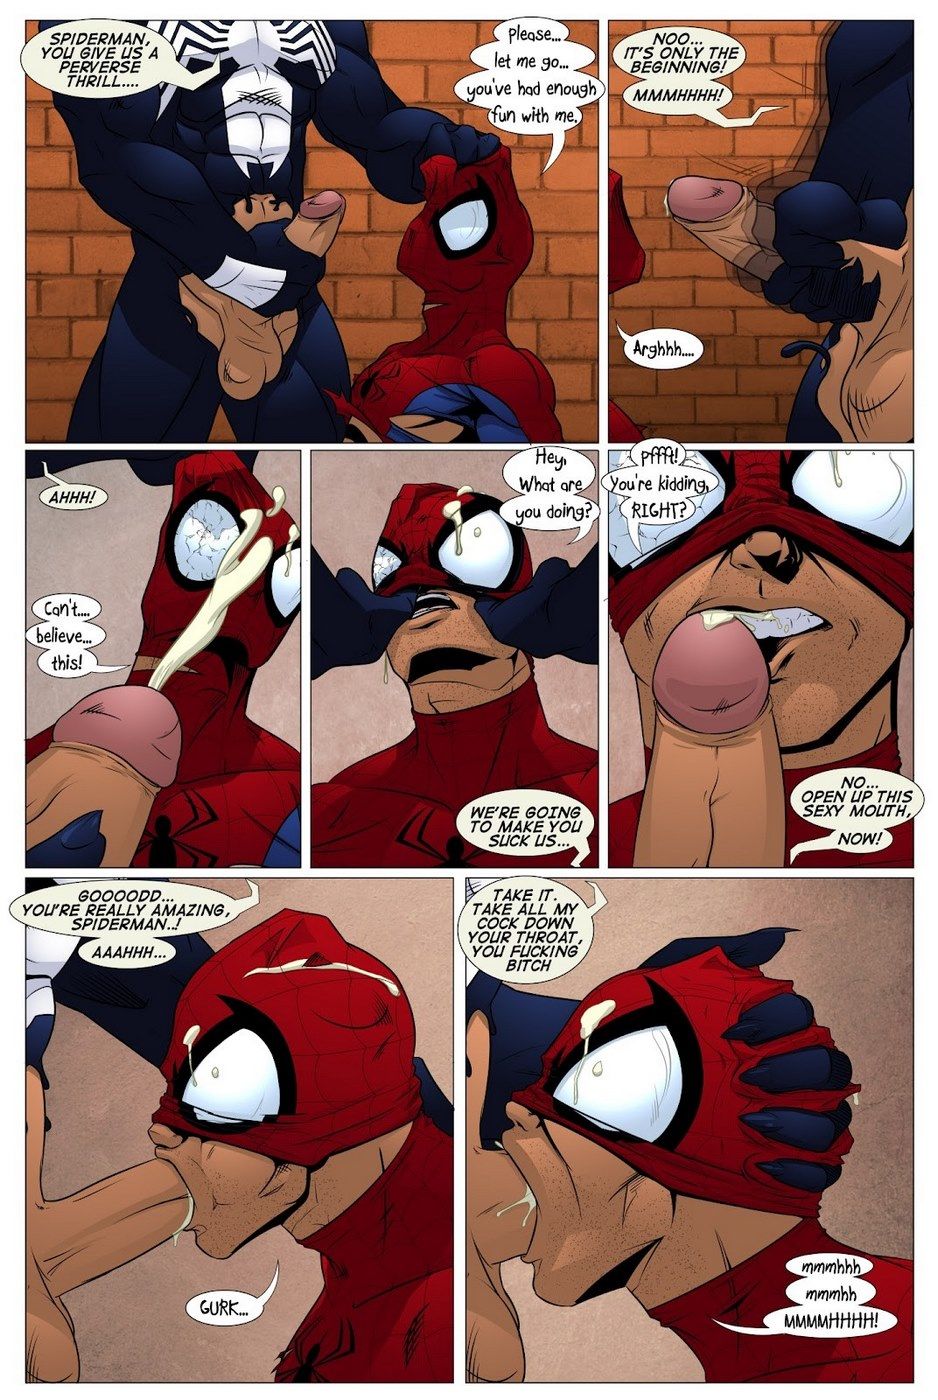 Shooters (Spider-Man Venom) page 11